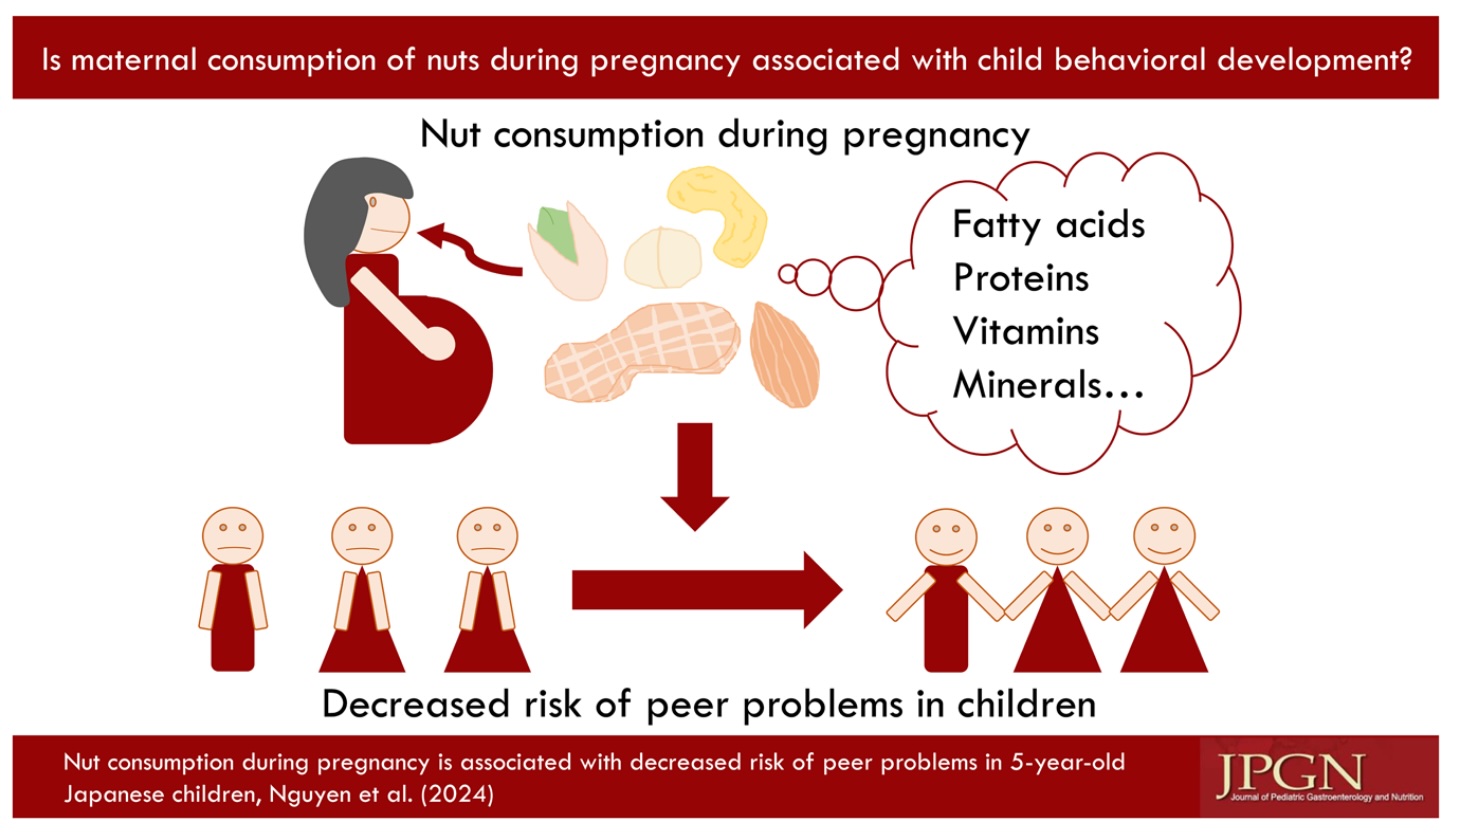 Graphical Abstract 妊娠中のナッツ摂取は出生児の5歳時点のピアトラブルリスク低下に関連する：九州・沖縄母子保健研究